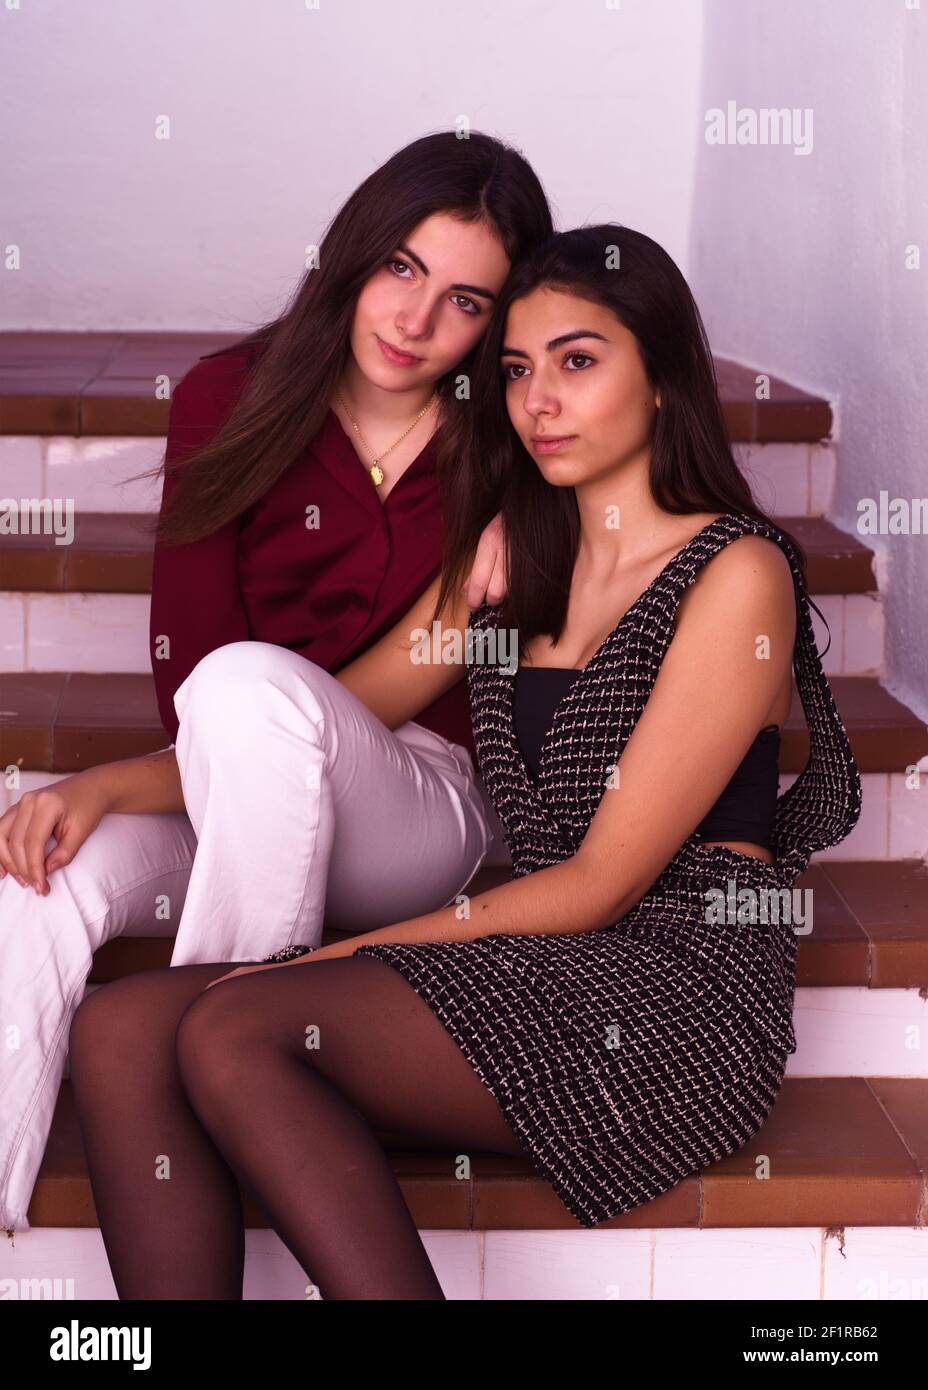 Deux jolies sœurs adolescentes assises près l'une de l'autre sur un escalier Banque D'Images